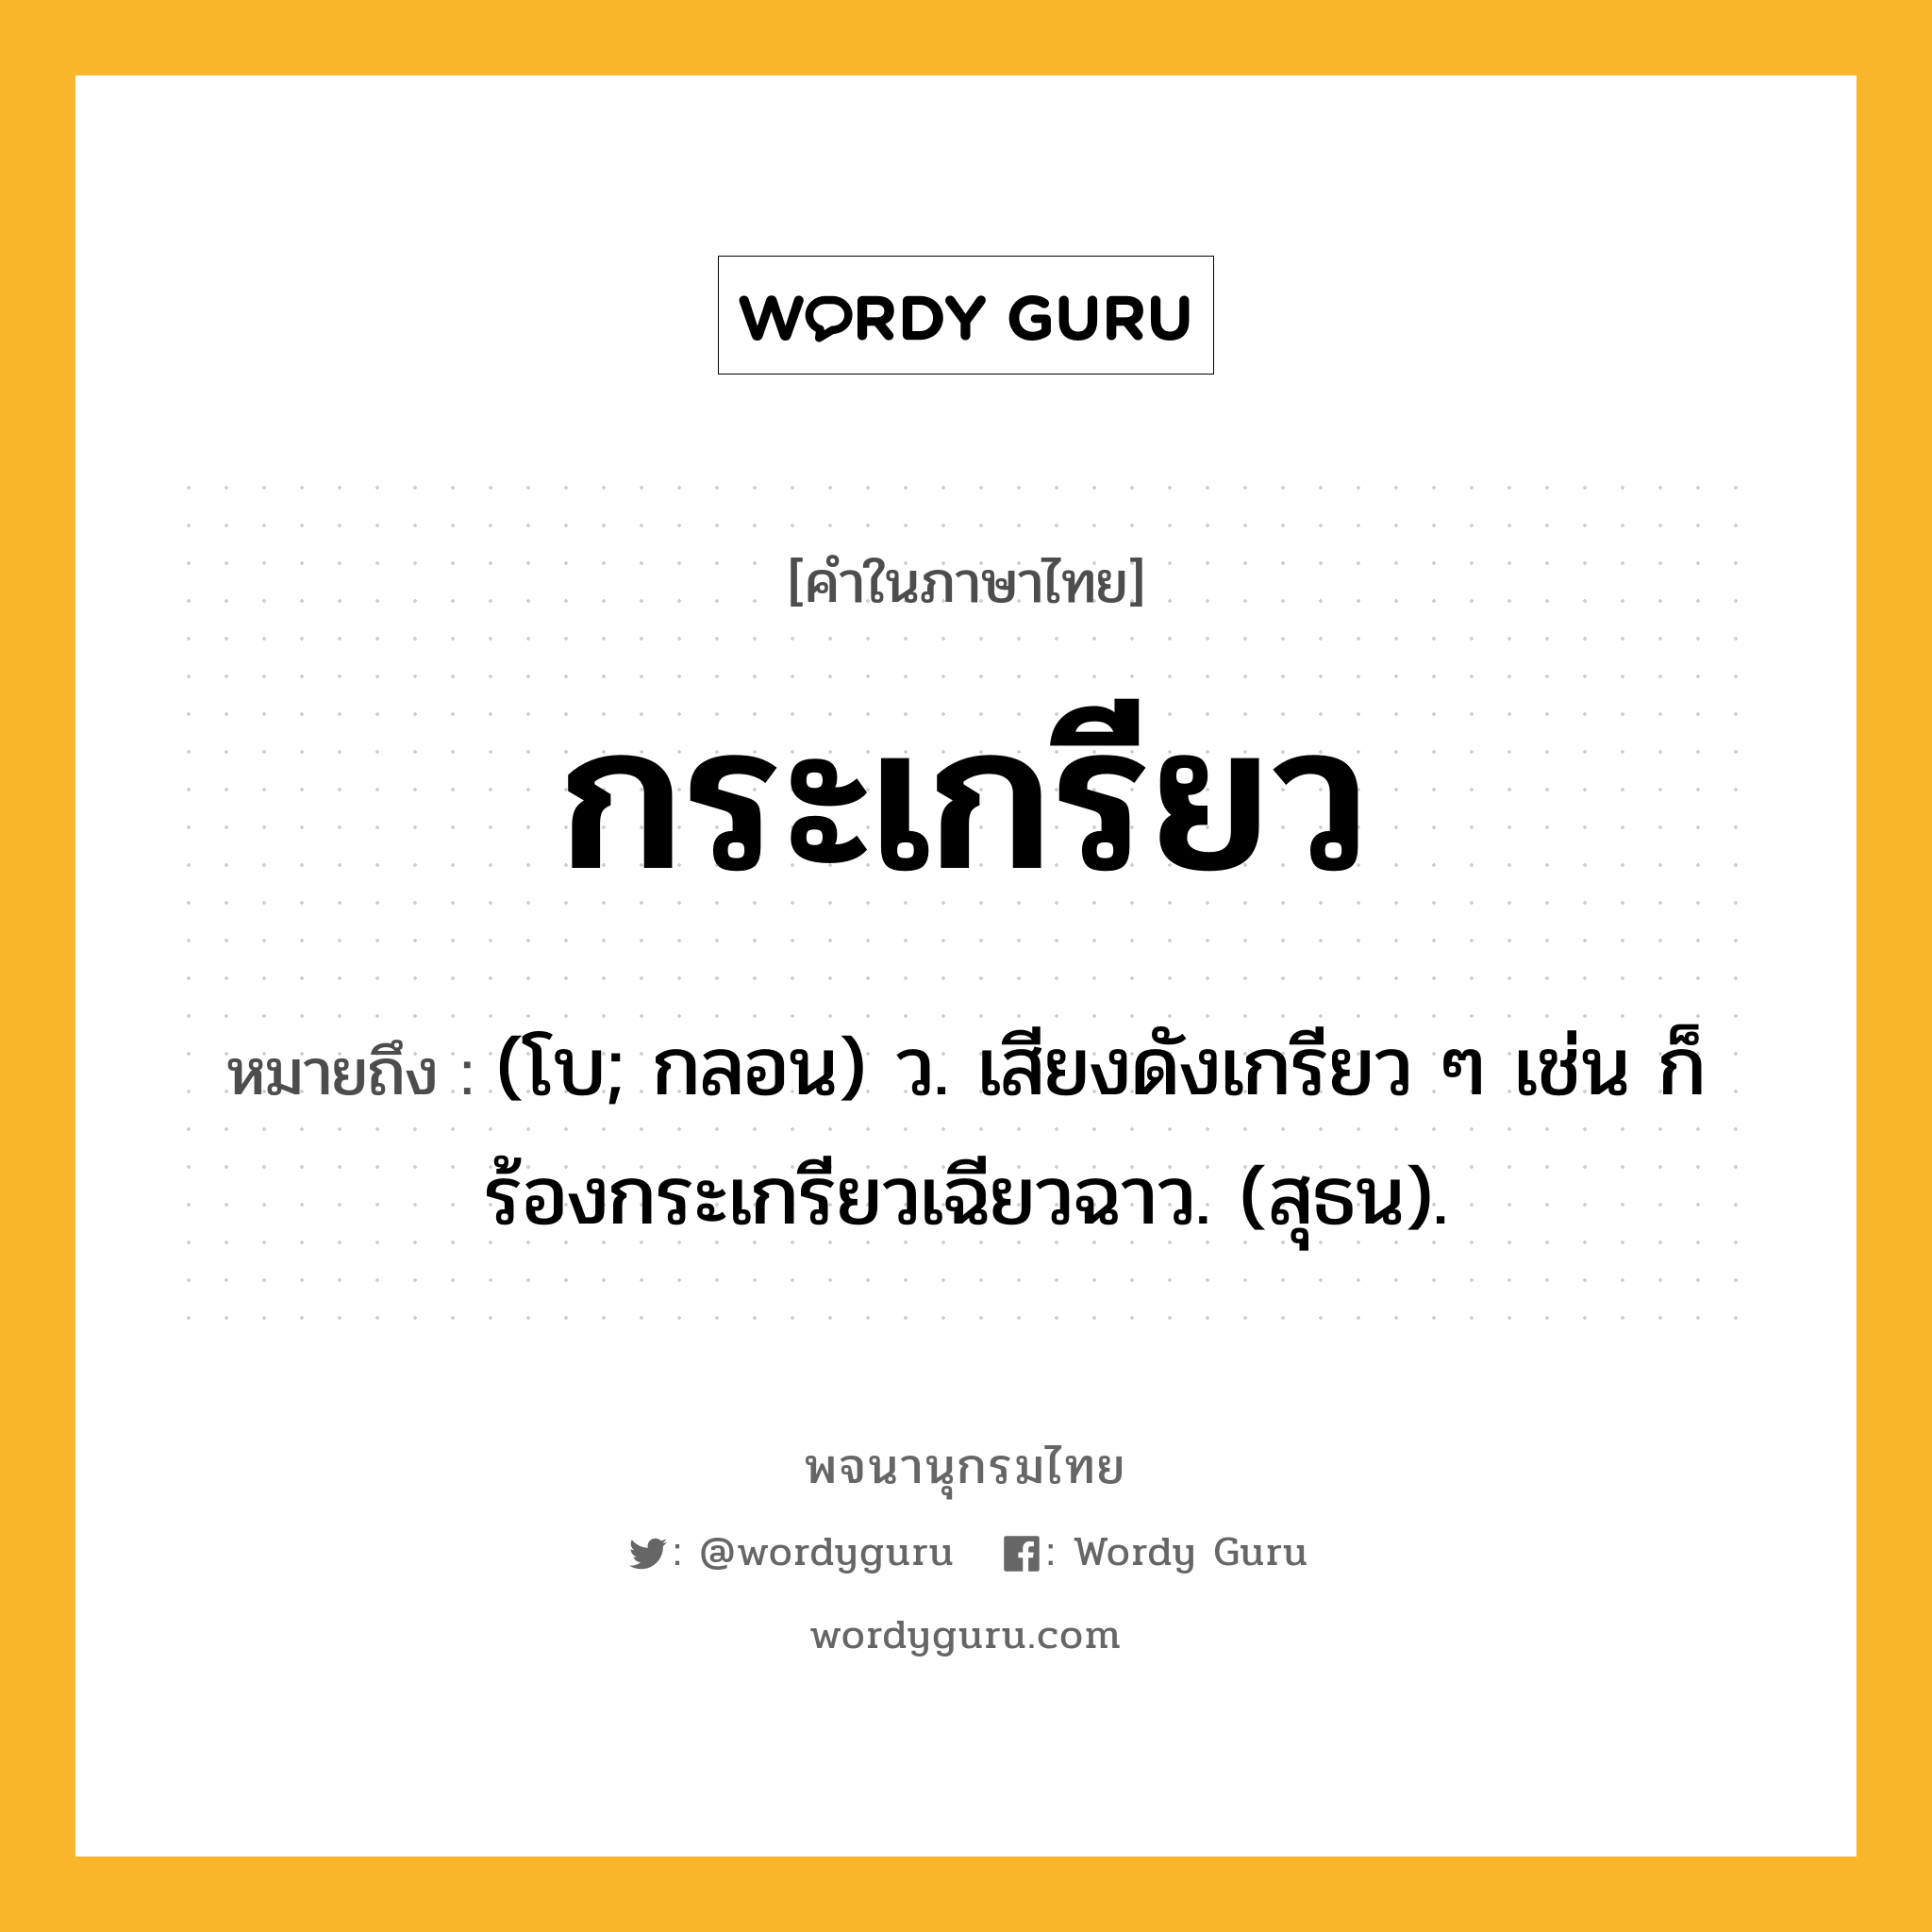 กระเกรียว ความหมาย หมายถึงอะไร?, คำในภาษาไทย กระเกรียว หมายถึง (โบ; กลอน) ว. เสียงดังเกรียว ๆ เช่น ก็ร้องกระเกรียวเฉียวฉาว. (สุธน).